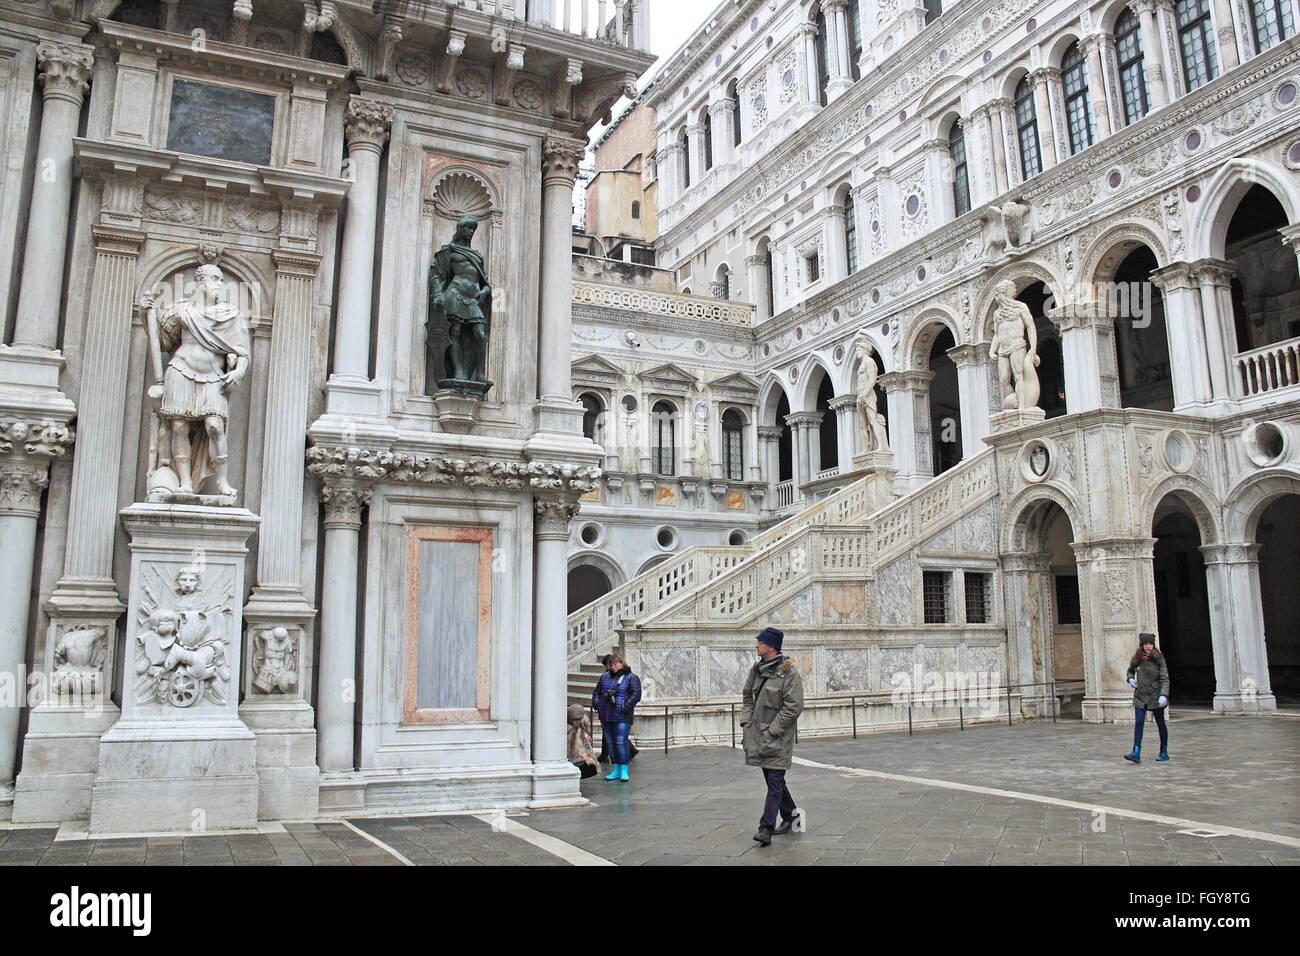 Arco Foscari et Scala dei Giganti, du Palais des Doges, de la Piazza San Marco, Venise, Vénétie, Italie, Mer Adriatique, de l'Europe Banque D'Images